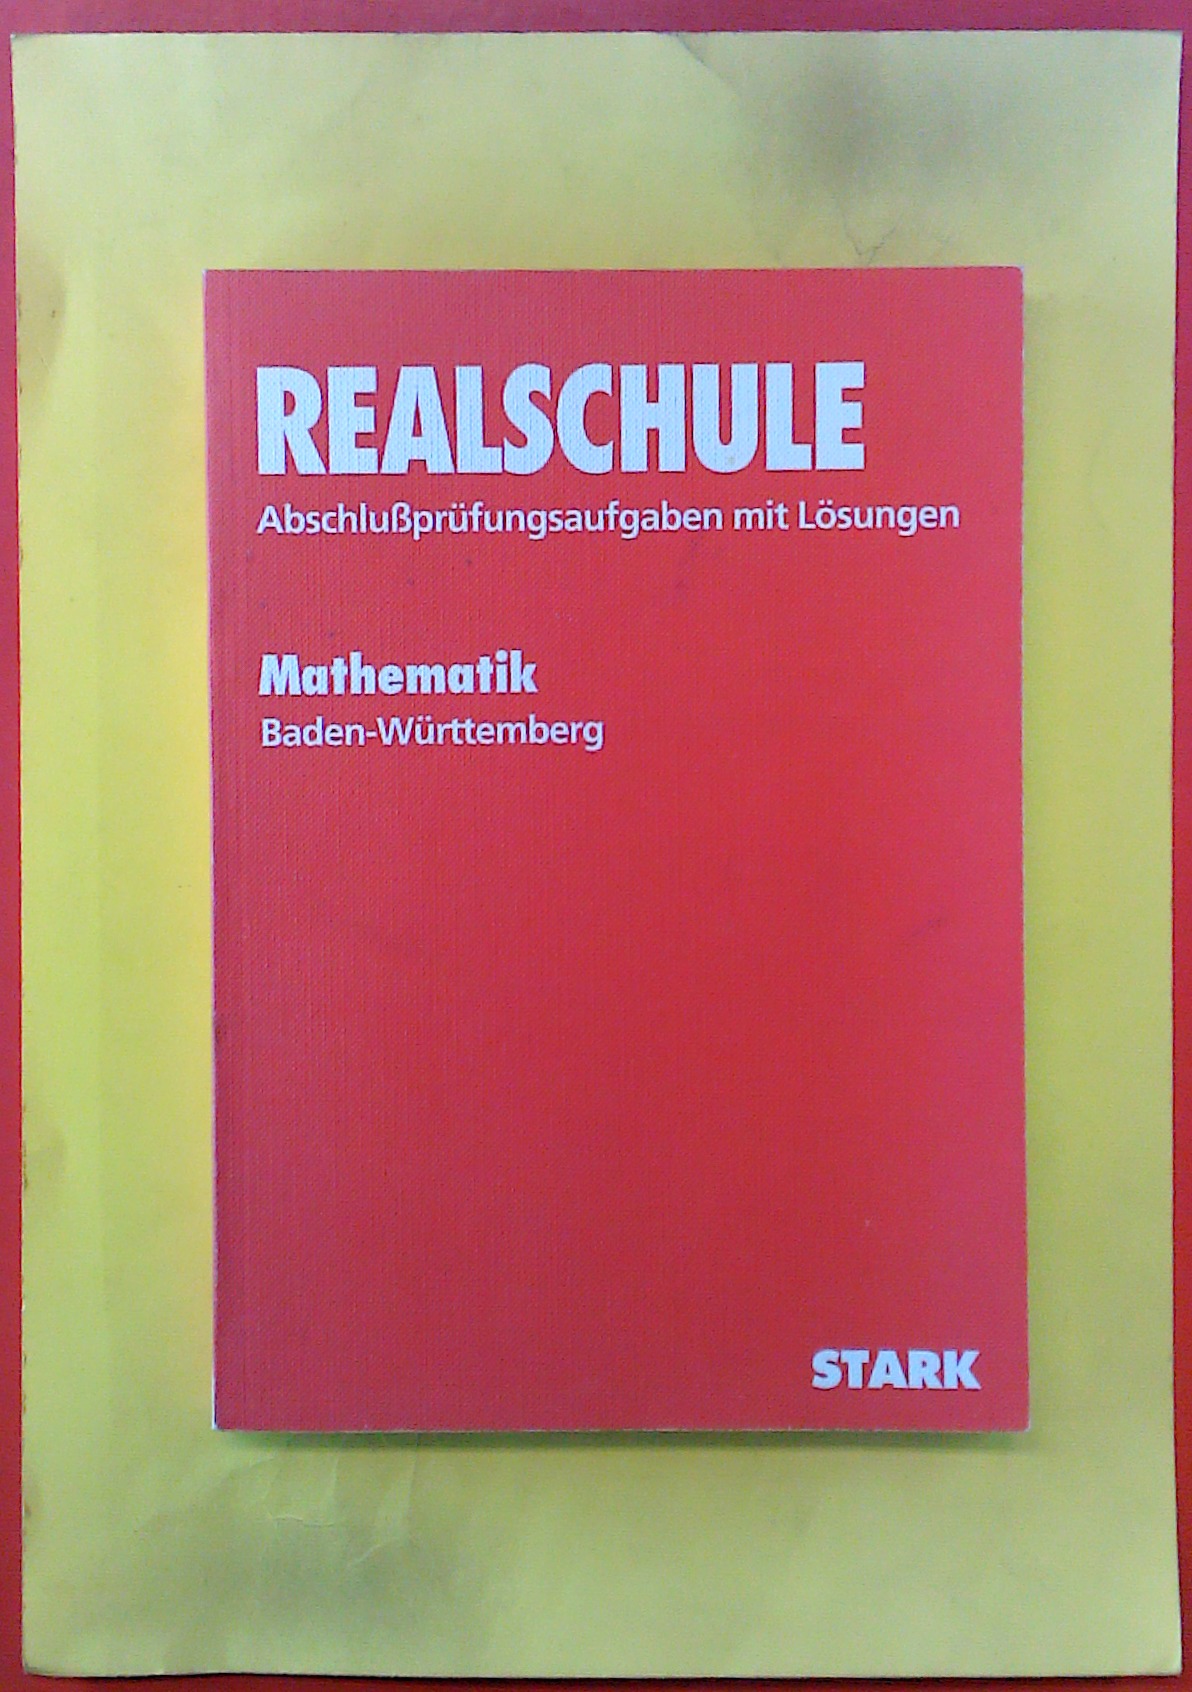 REALSCHULE 94 Abschlußprüfungsaufgaben mit Lösungen 1985-1993. Mathematik Baden-Württemberg, 8. ergänzte Auflage - Lothar Wurz